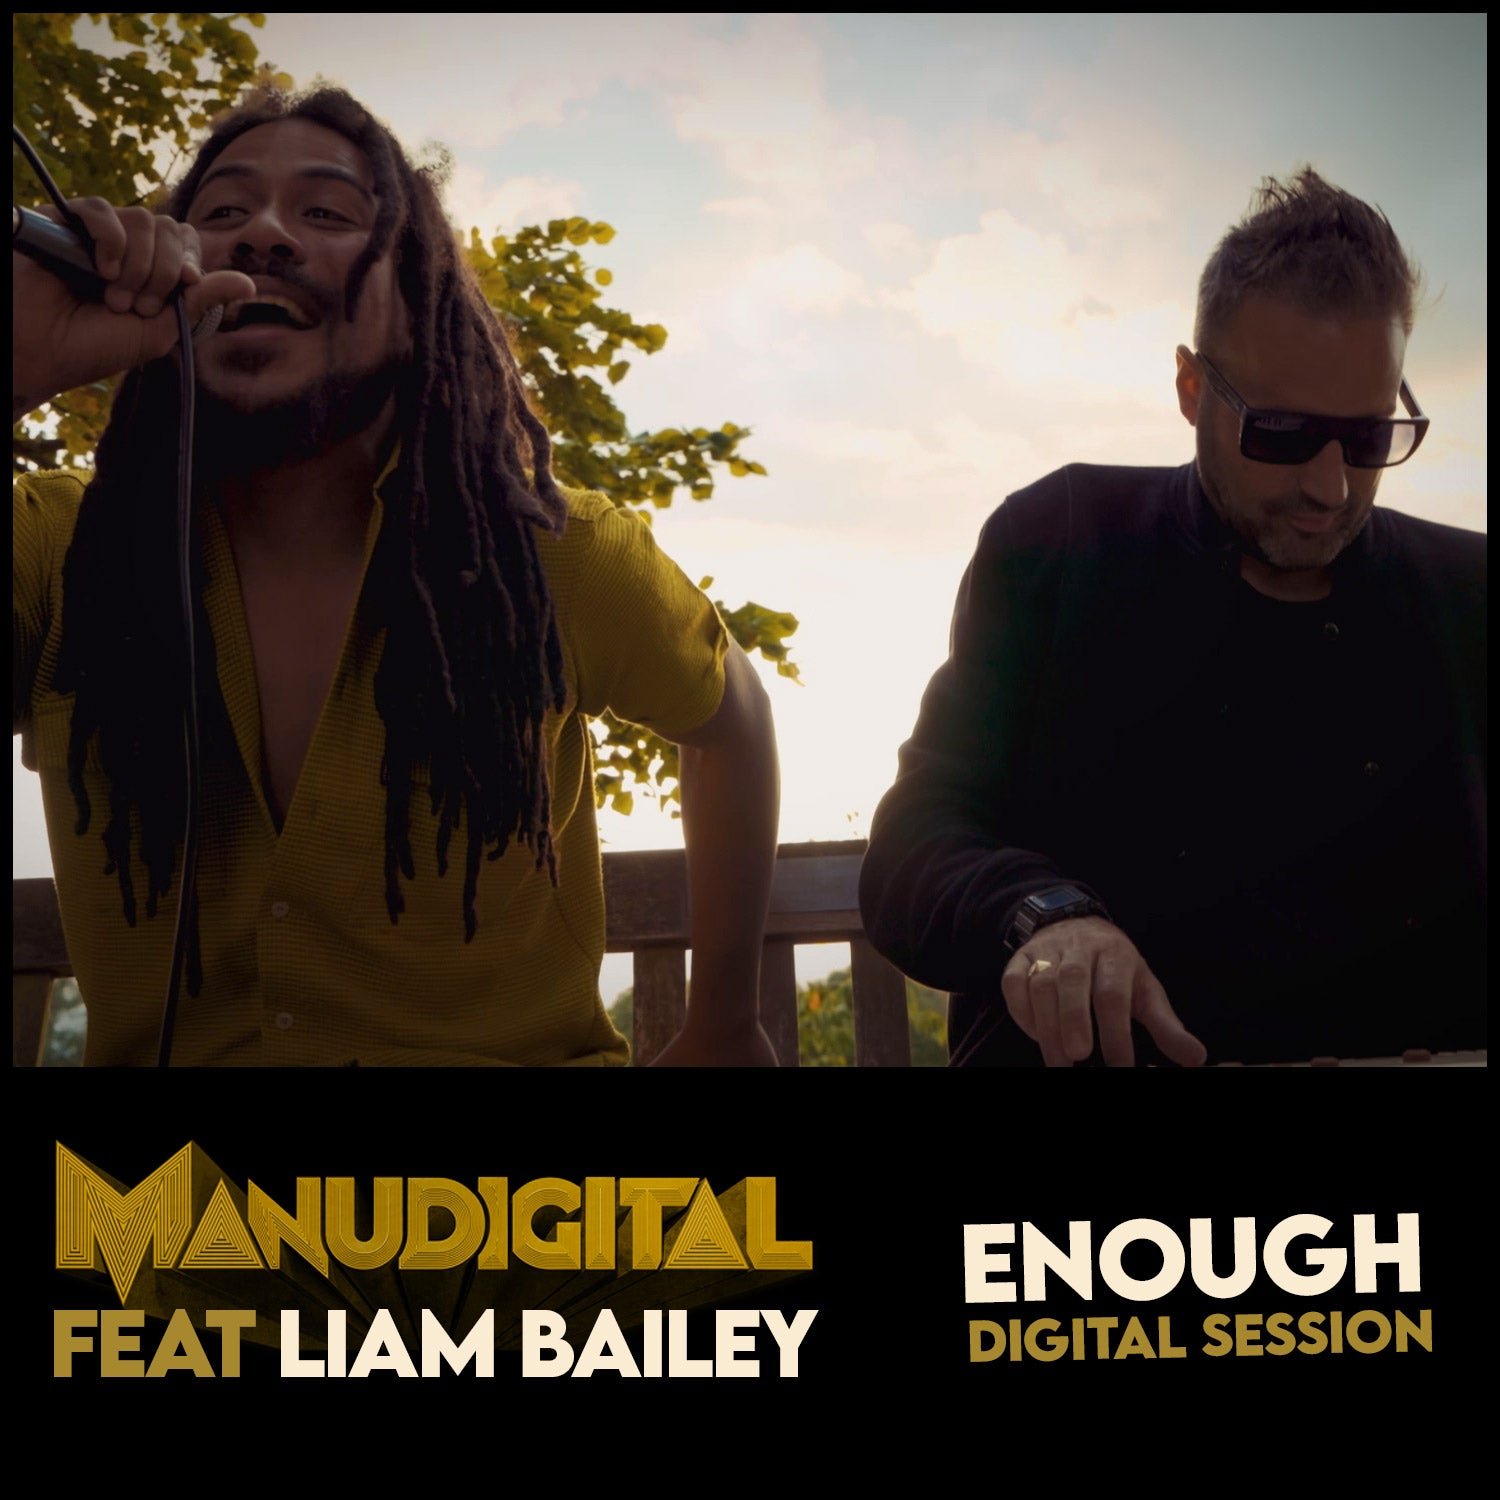 Manudigital "Digital Session Feat Liam Bailey"